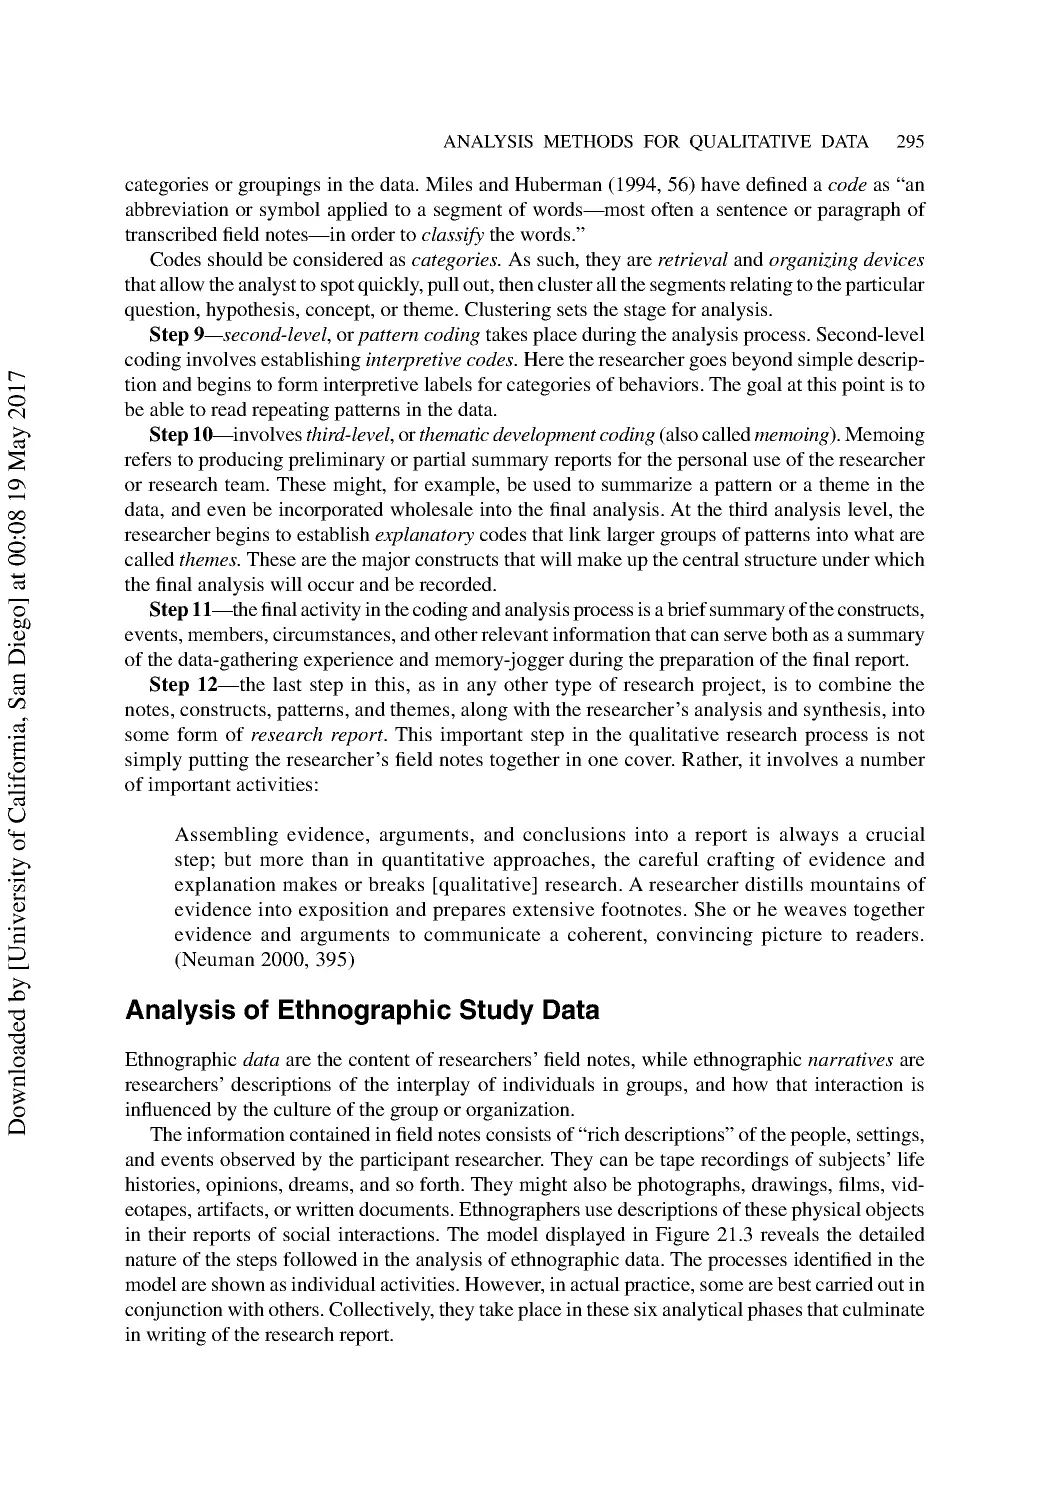 Analysis of Ethnographic Study Data